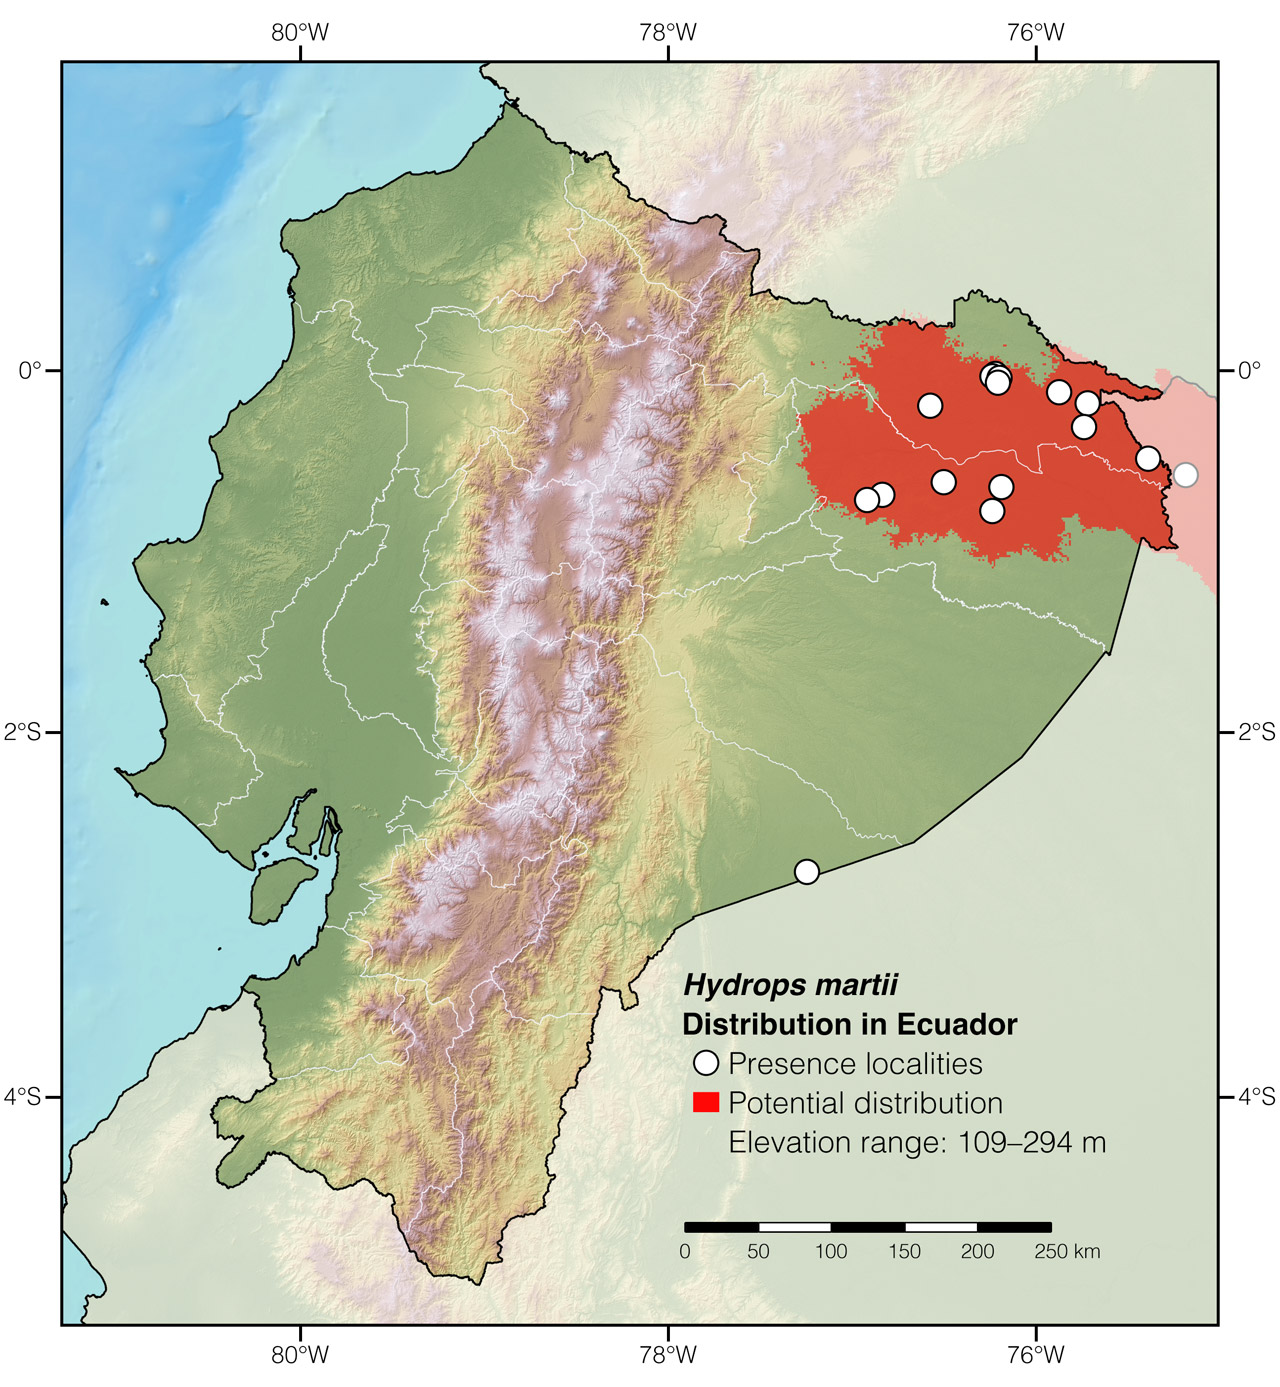 Distribution of Hydrops martii in Ecuador